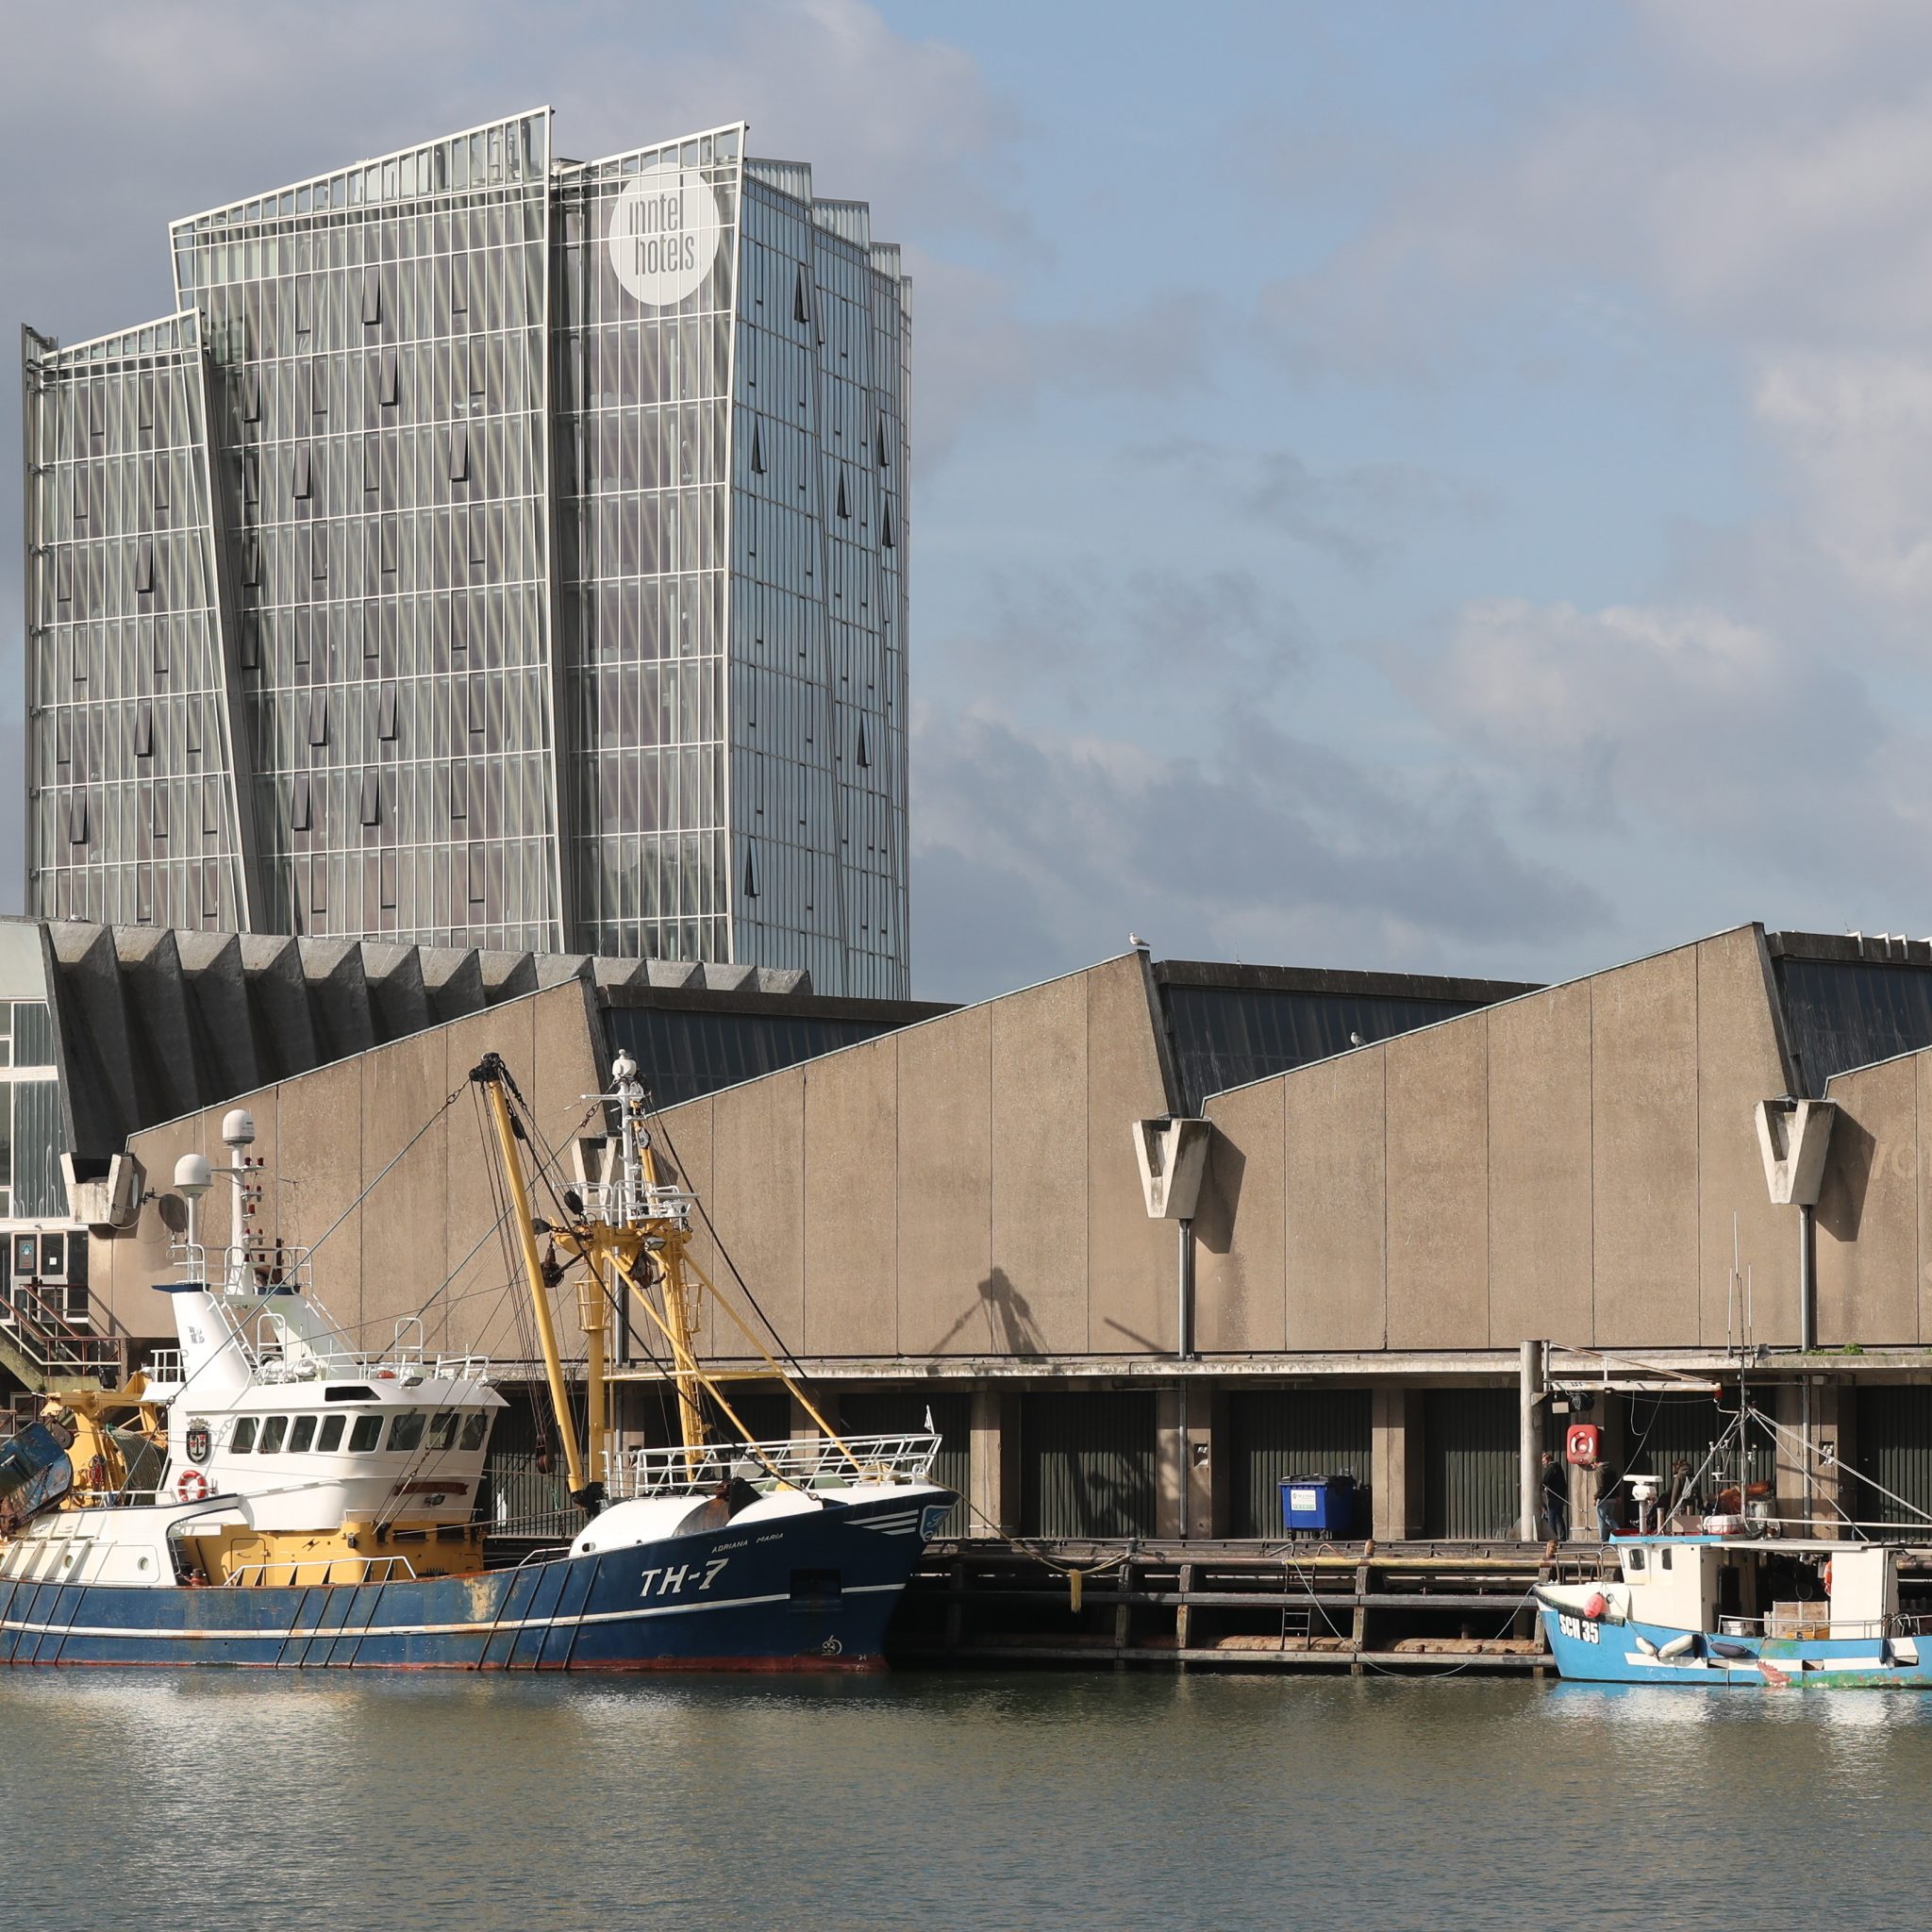 De TH-7 na de verkoop van haar laatste vangst aan de visafslag van Scheveningen. (Foto Bram Pronk)